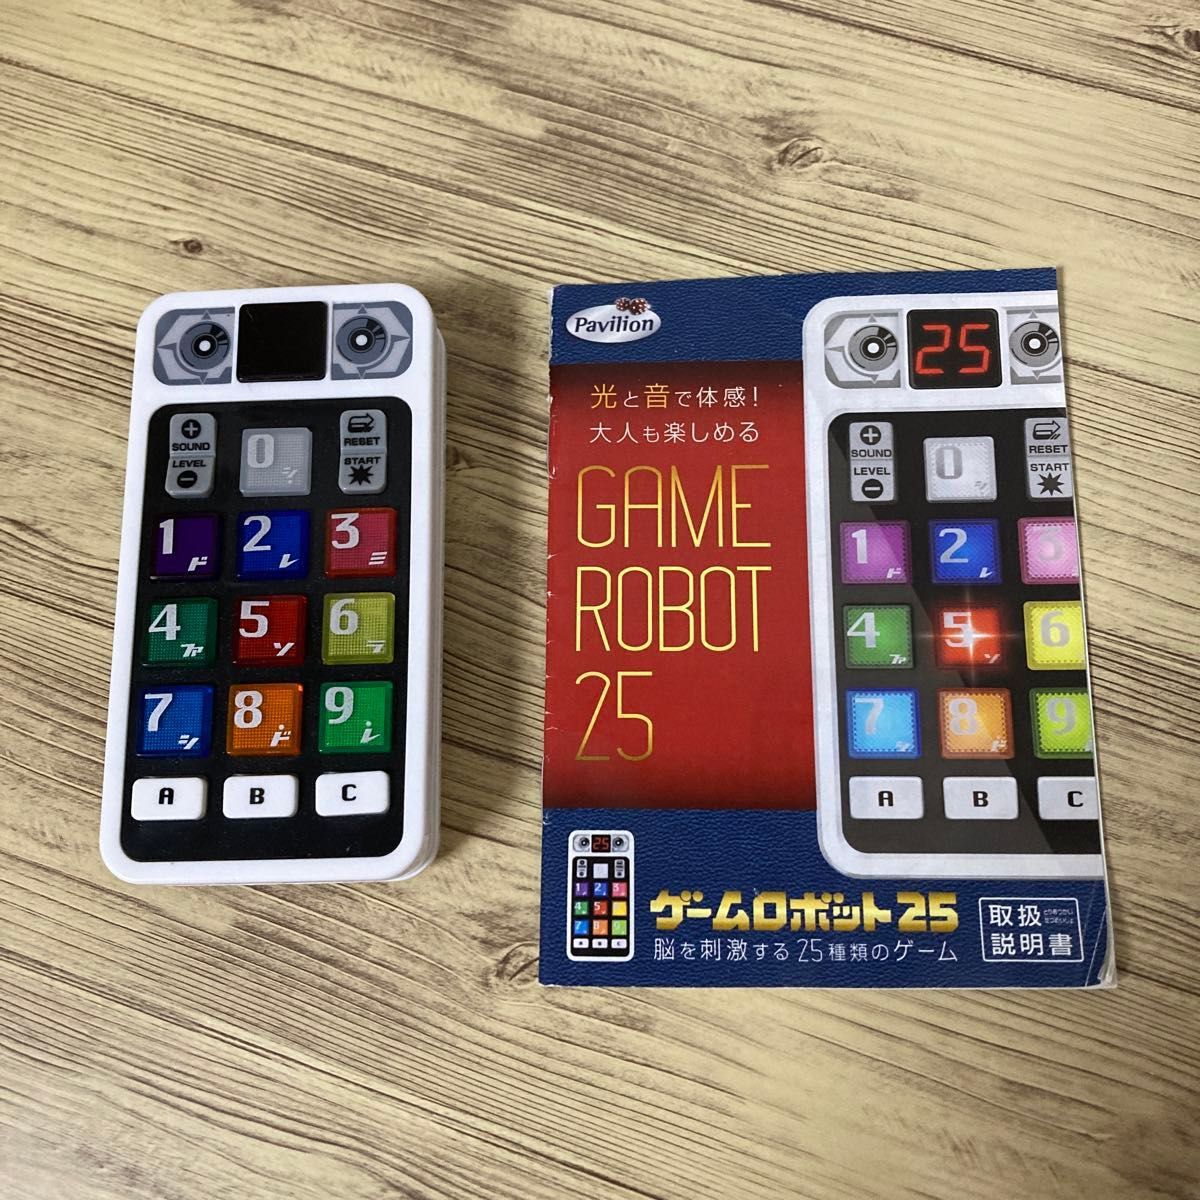 GAME ROBOT 25